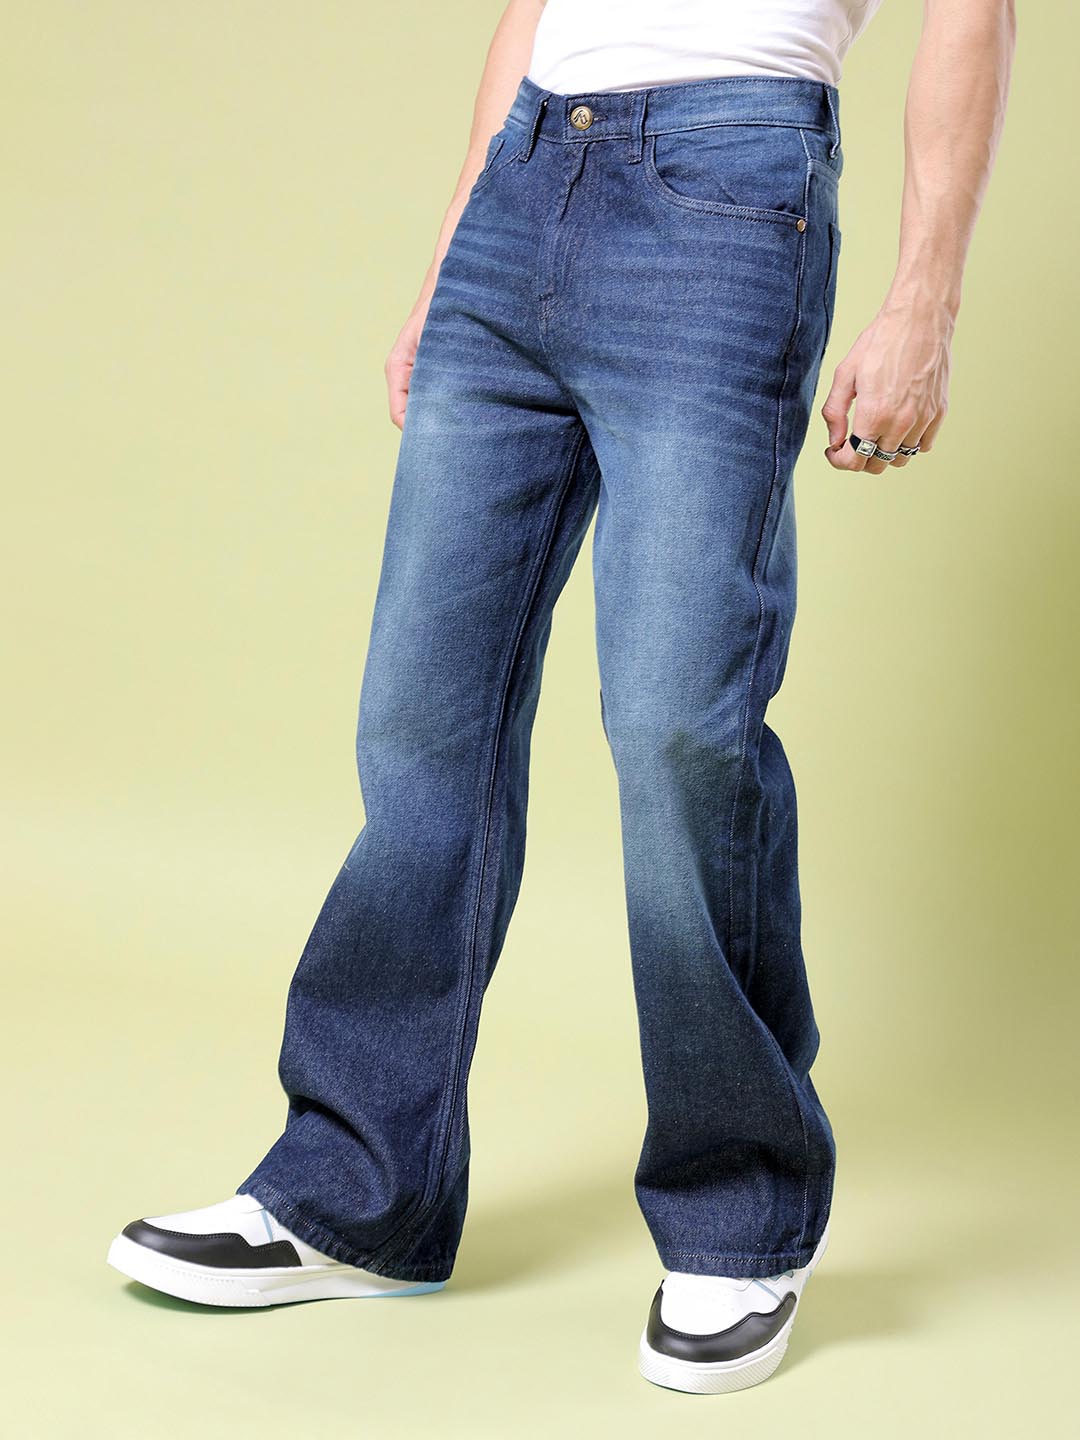 Shop Men Bootcut Jeans Online.